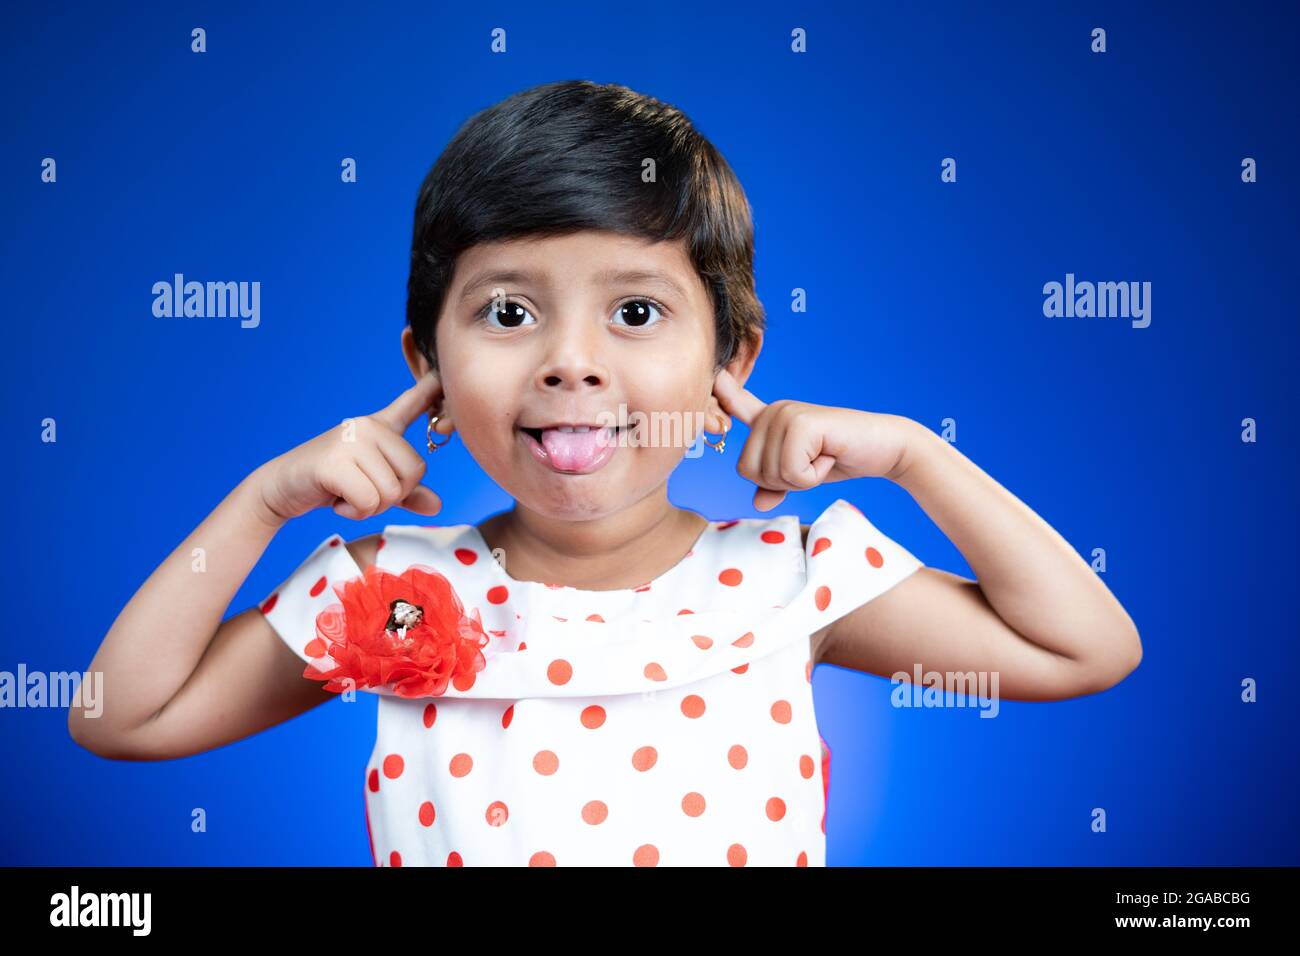 Petite fille enfant avec la langue dehors ou grimacing dansant sur fond bleu - heureux, gai et fou concept d'enfants. Banque D'Images